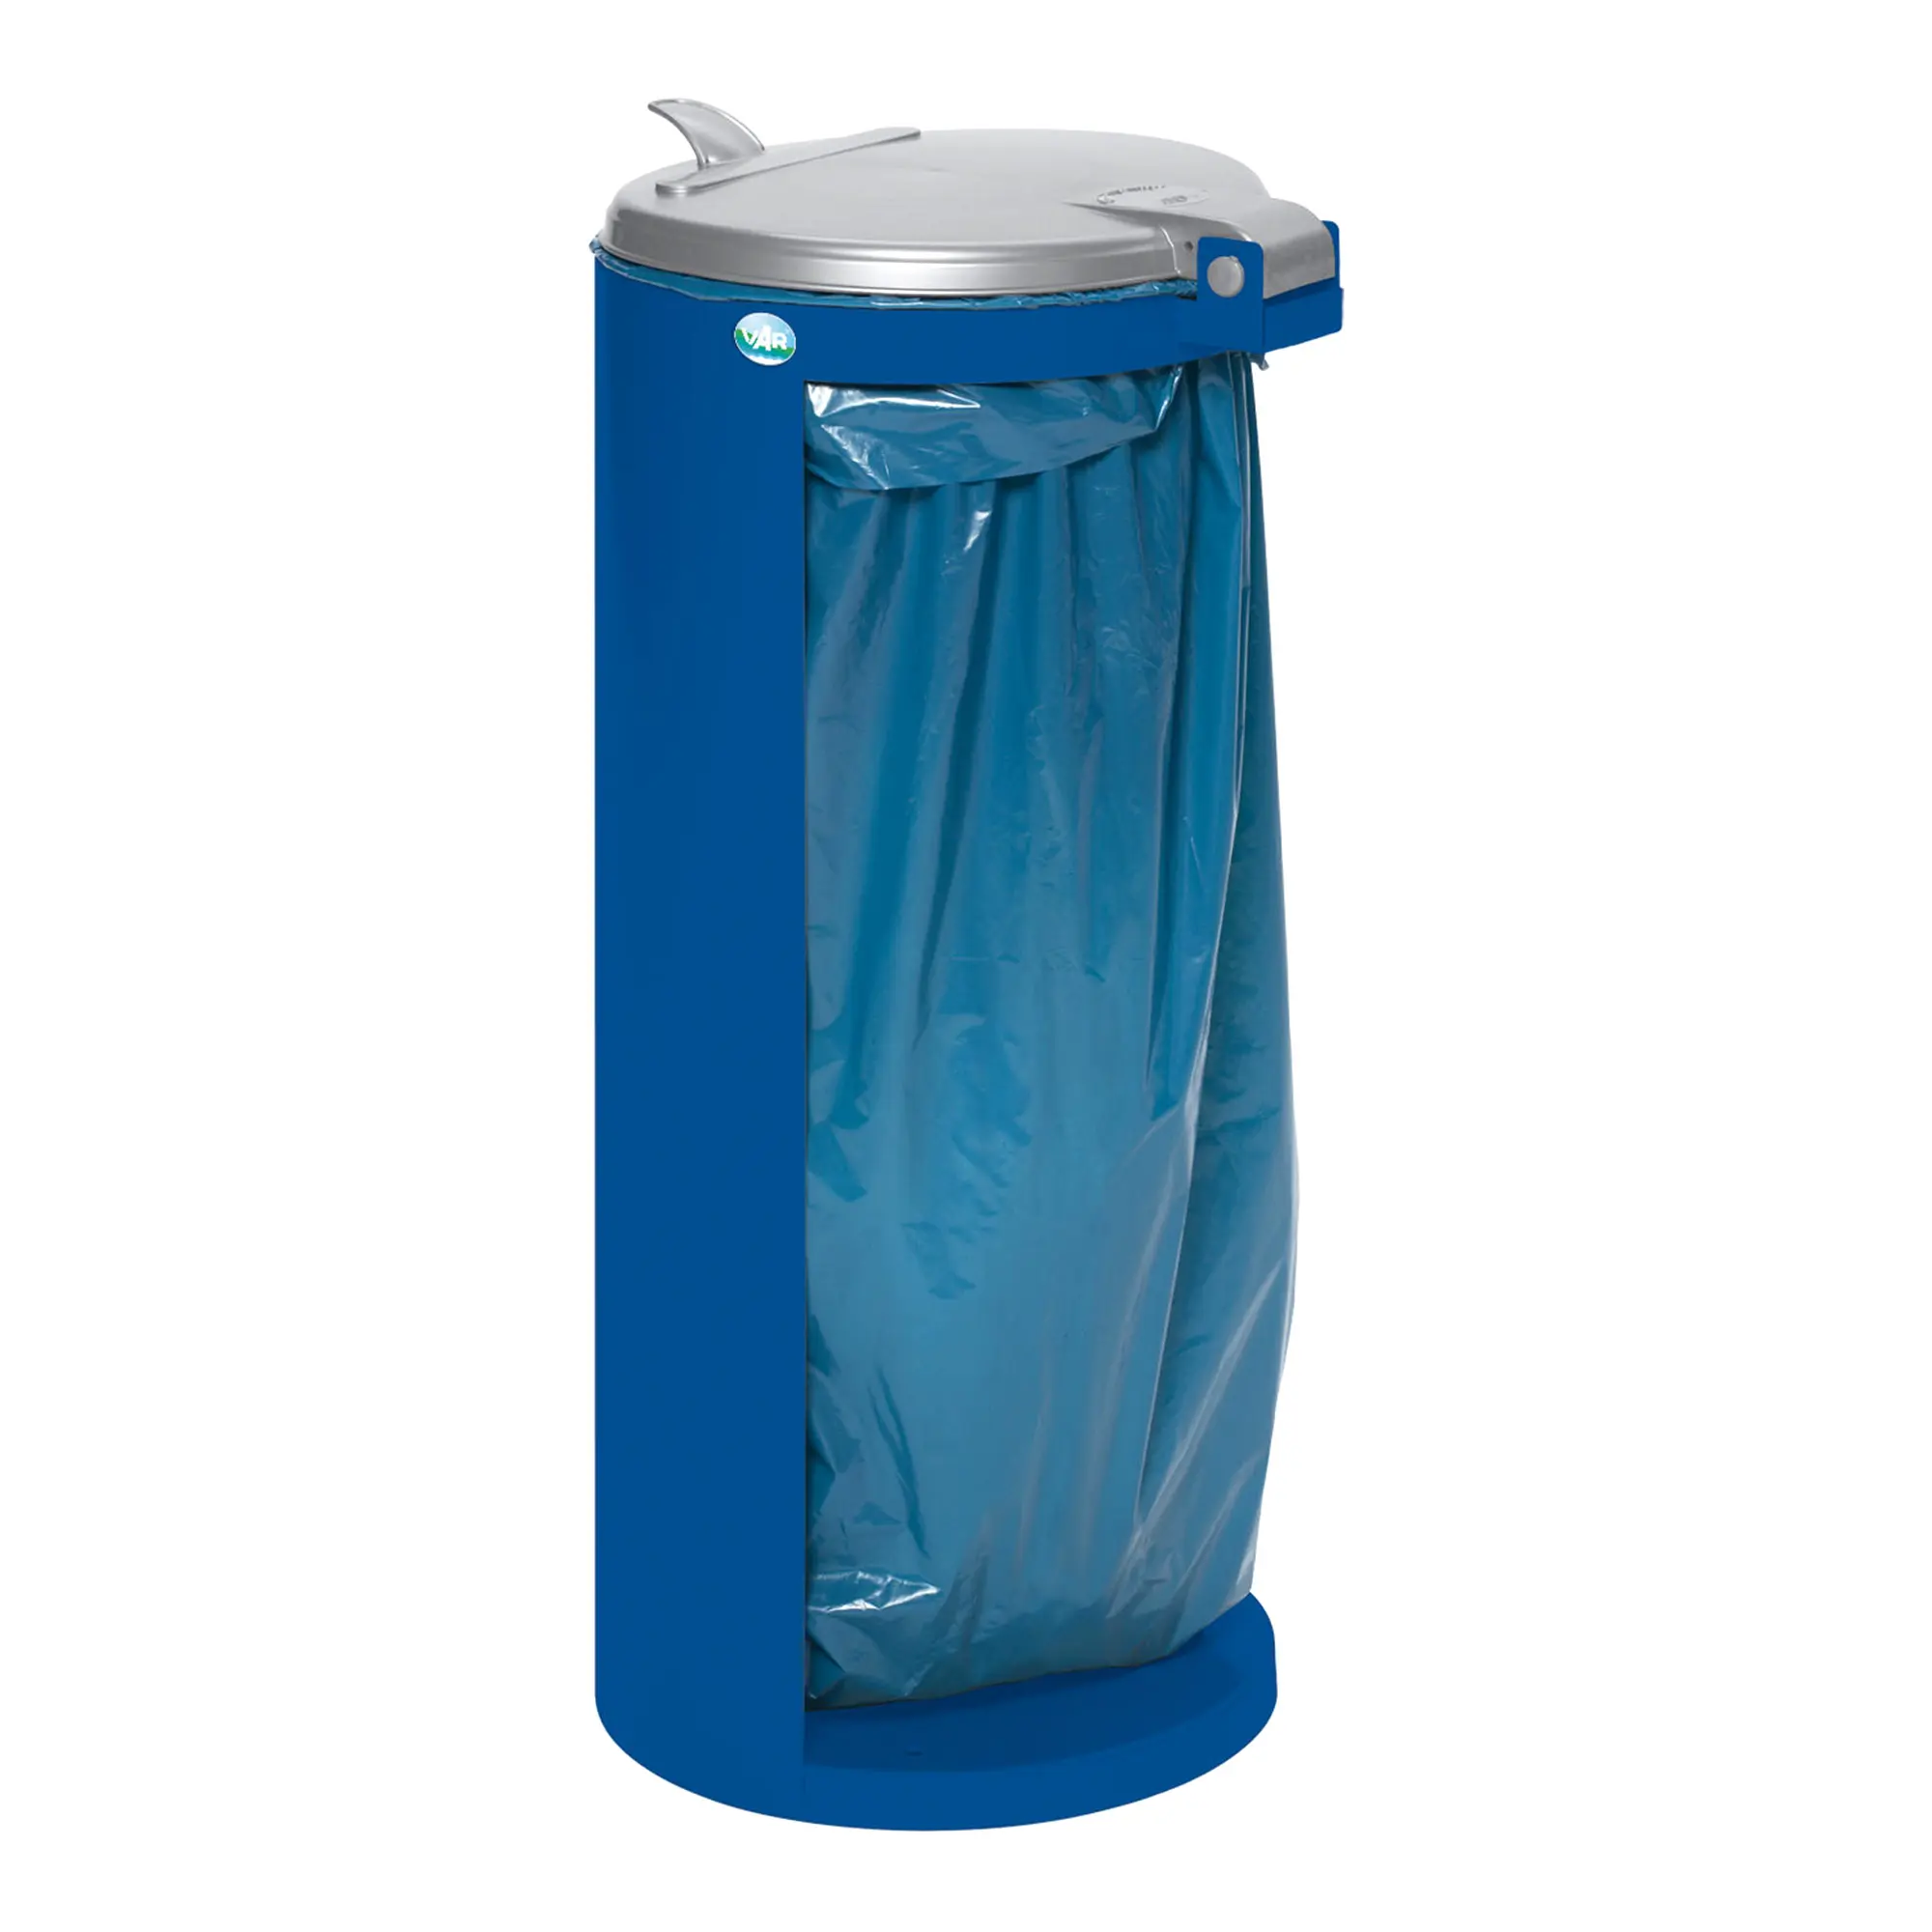 VAR Abfallsammler Kompakt Junior 120 Liter blau 10081_1